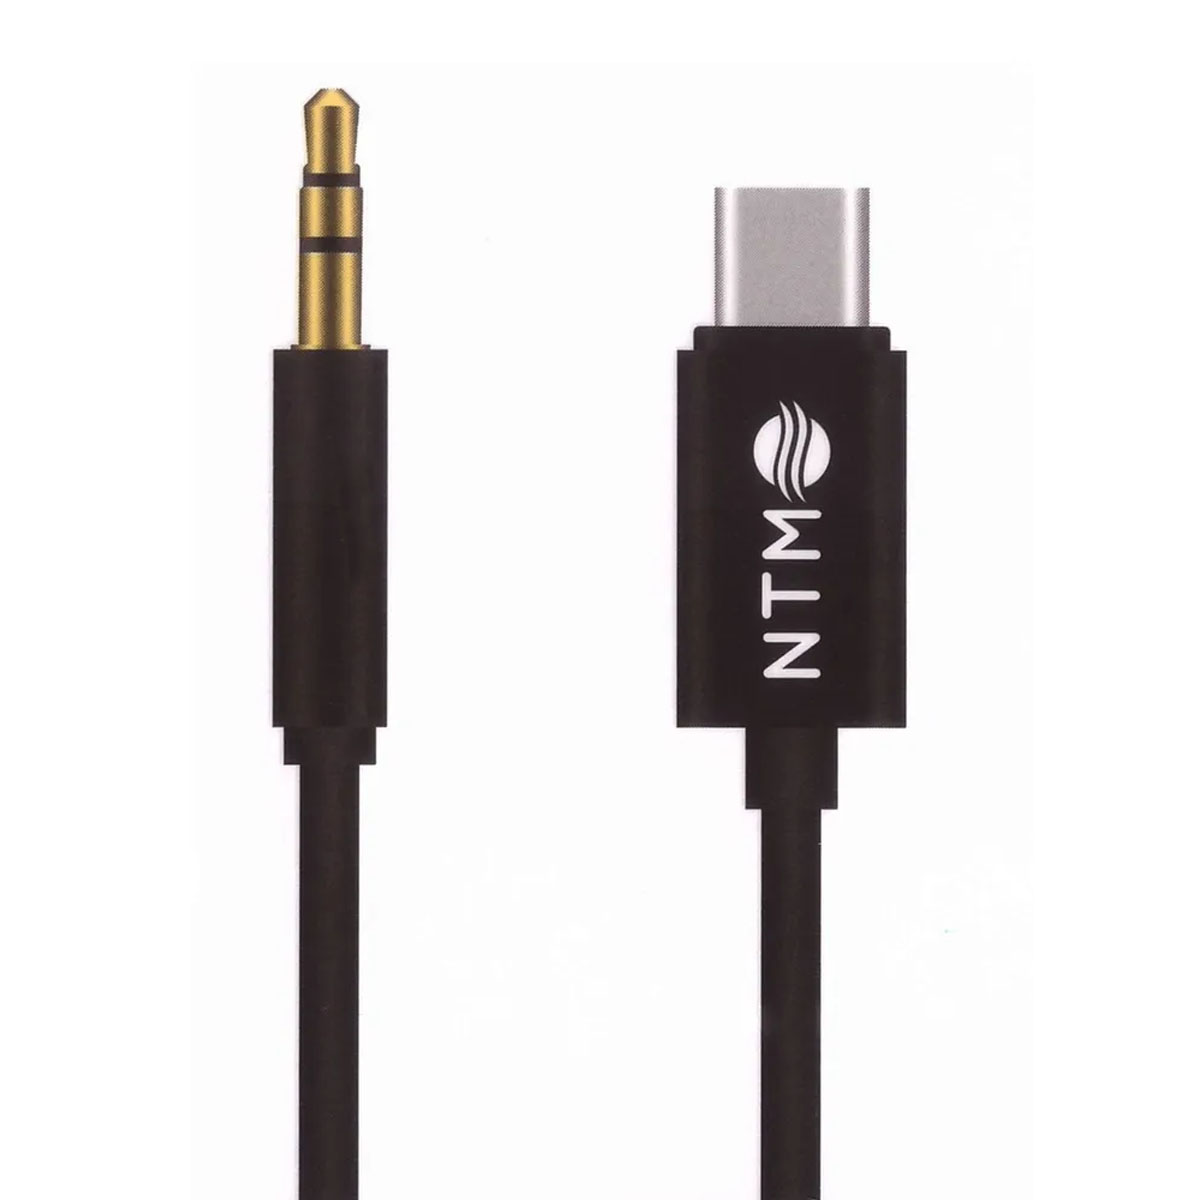 Аудио кабель, переходник NTM FM4-407 USB Type C на AUX Jack 3.5 mm, длина 1 метр, цвет черный